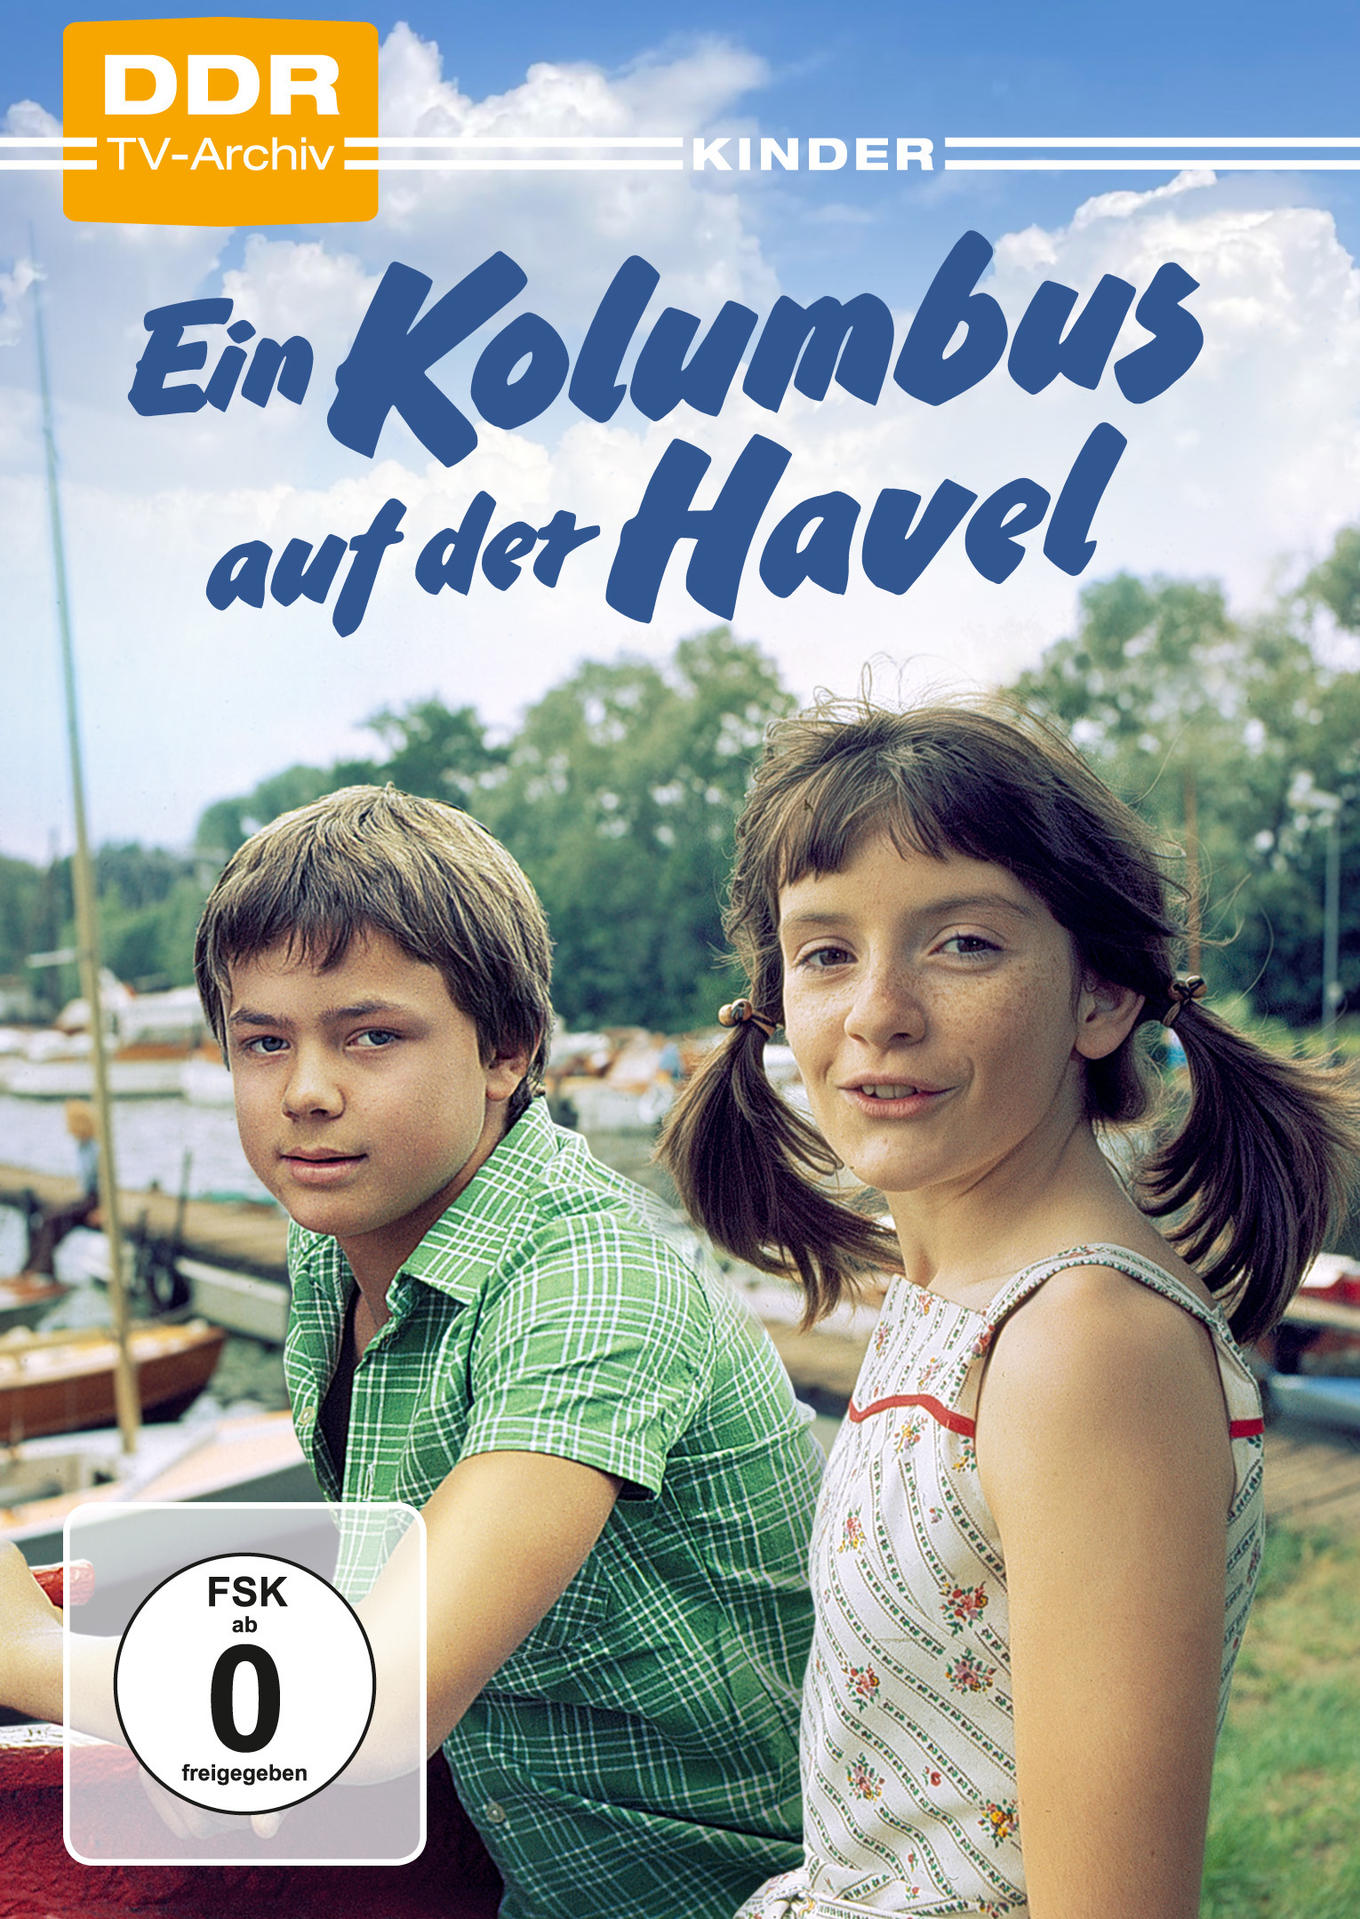 DVD auf der Ein Kolumbus Havel